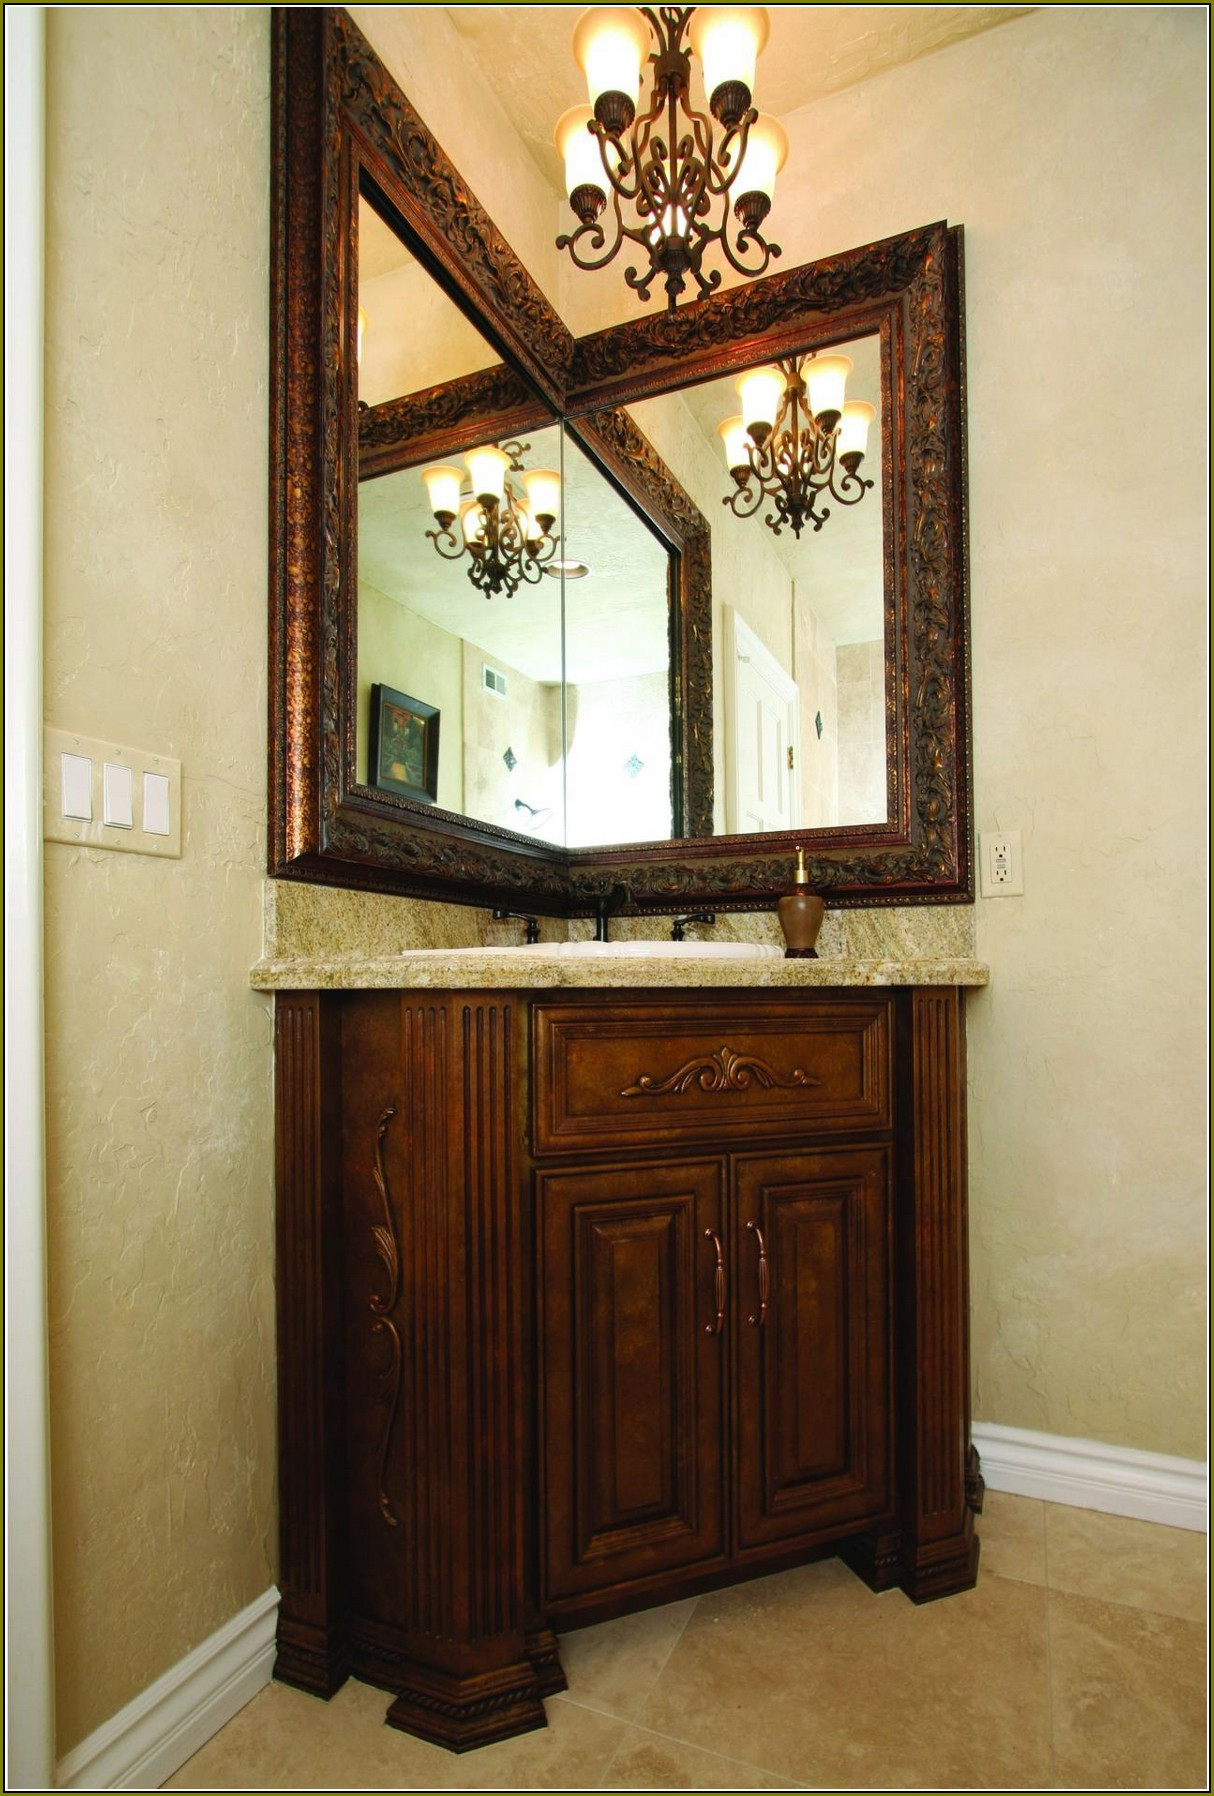 Lowes Mirrors Bathroom
 Bathroom Appealing Vanity Lowes For Simple Bathroom